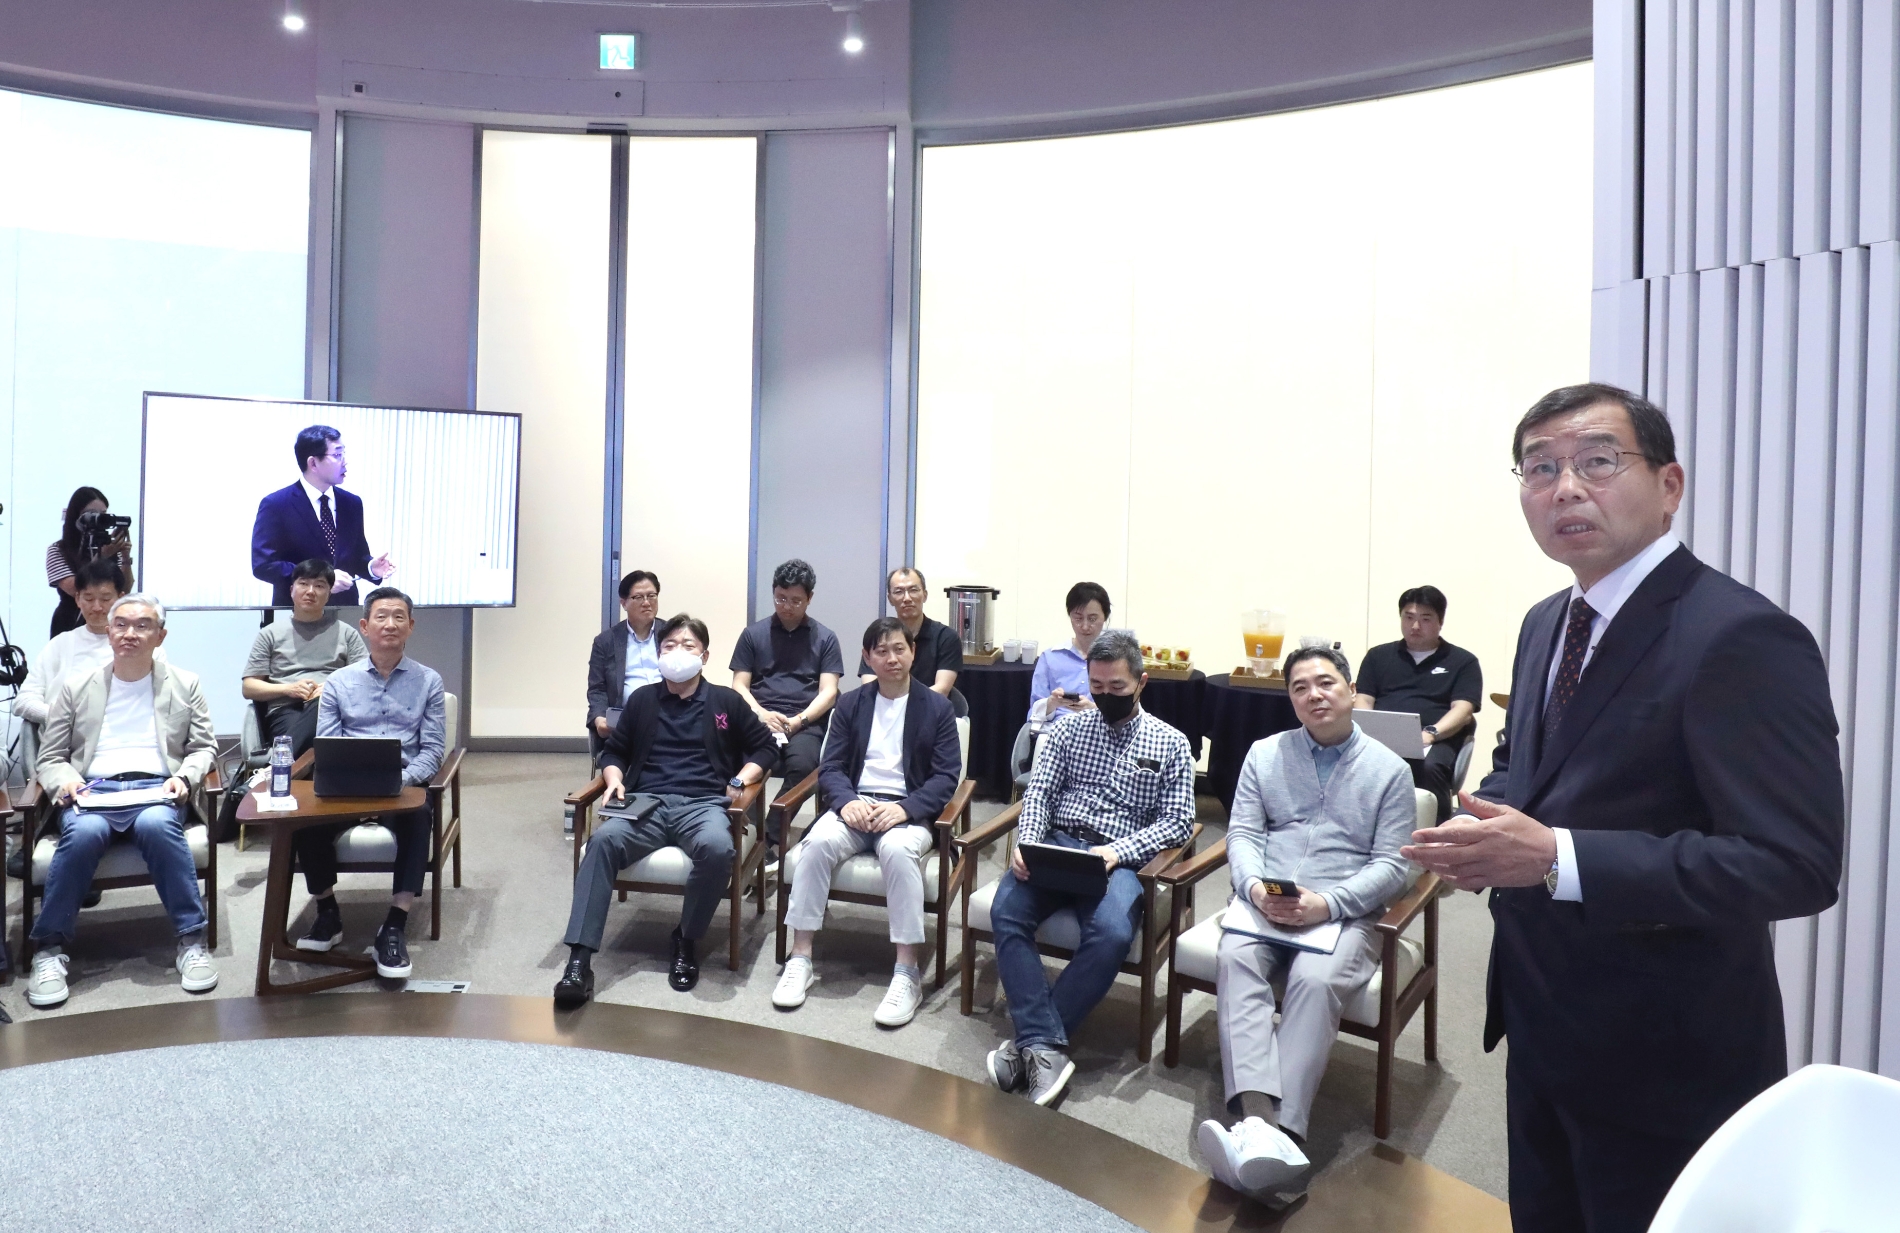 LG유플러스 용산본사에서 열린 특강에 참석한 황현식 CEO(앞줄 왼쪽에서 두번째)의 모습. 사진 제공=LG유플러스